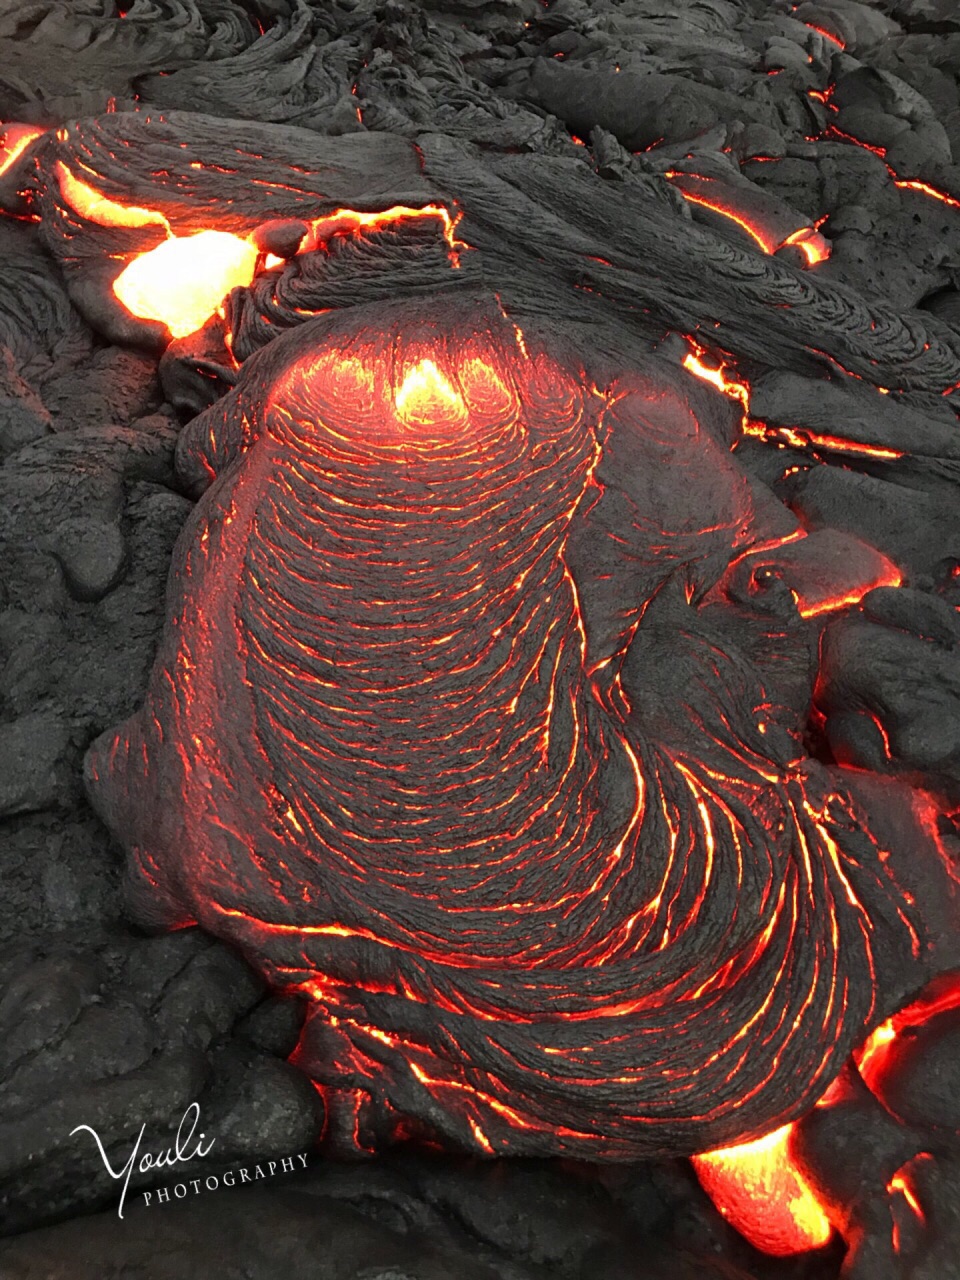 近距离拍摄夏威夷火山熔岩🌋